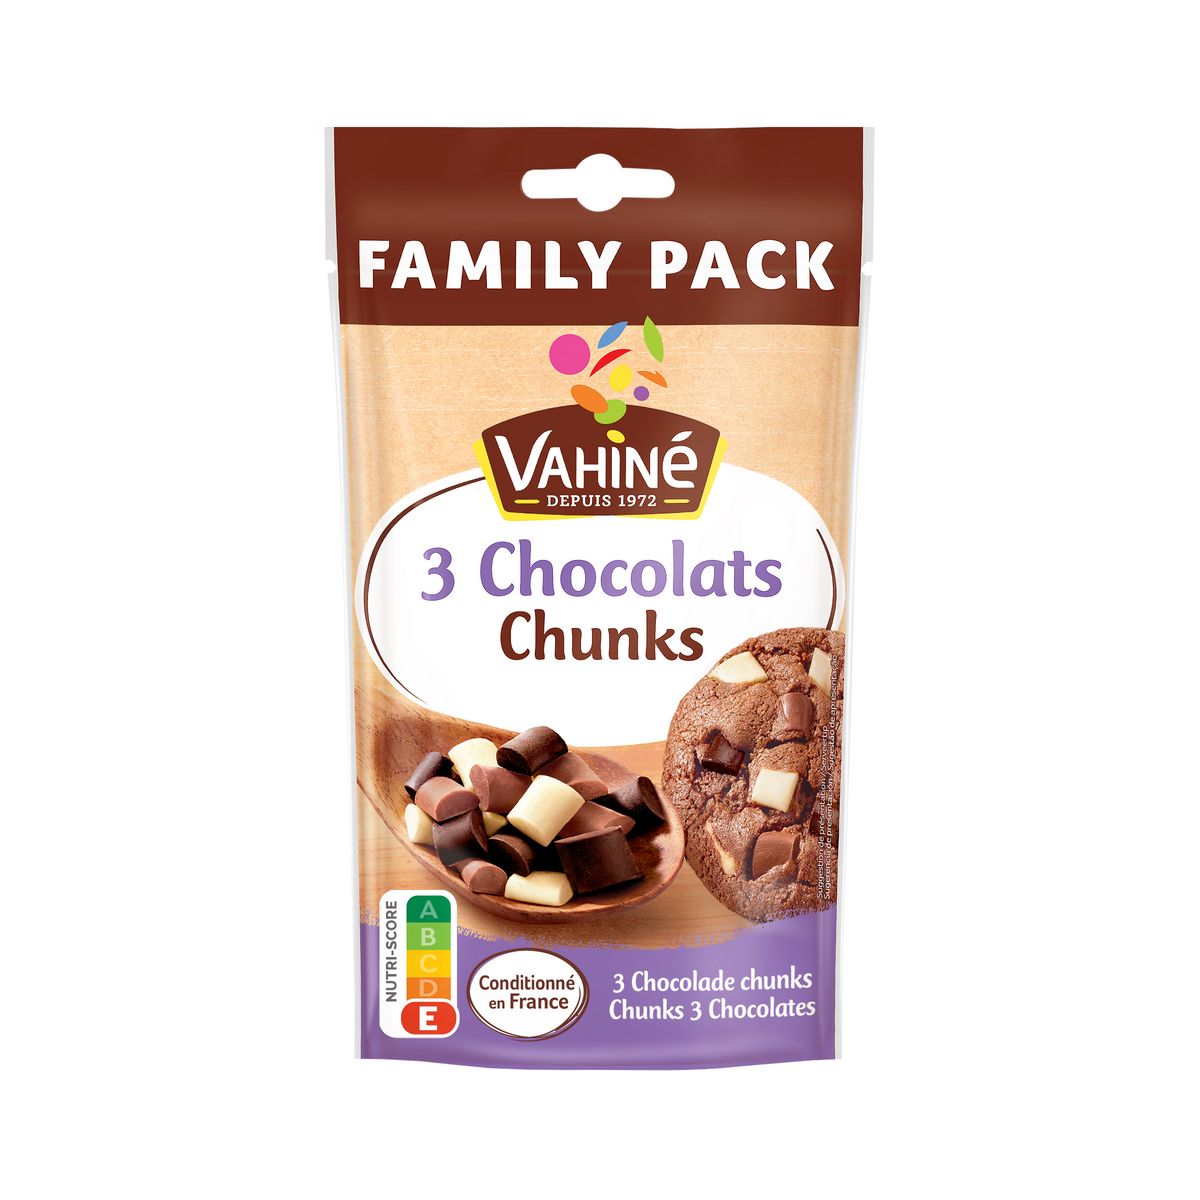 VAHINE Pépites chunks 3 chocolats Pack familial 180g